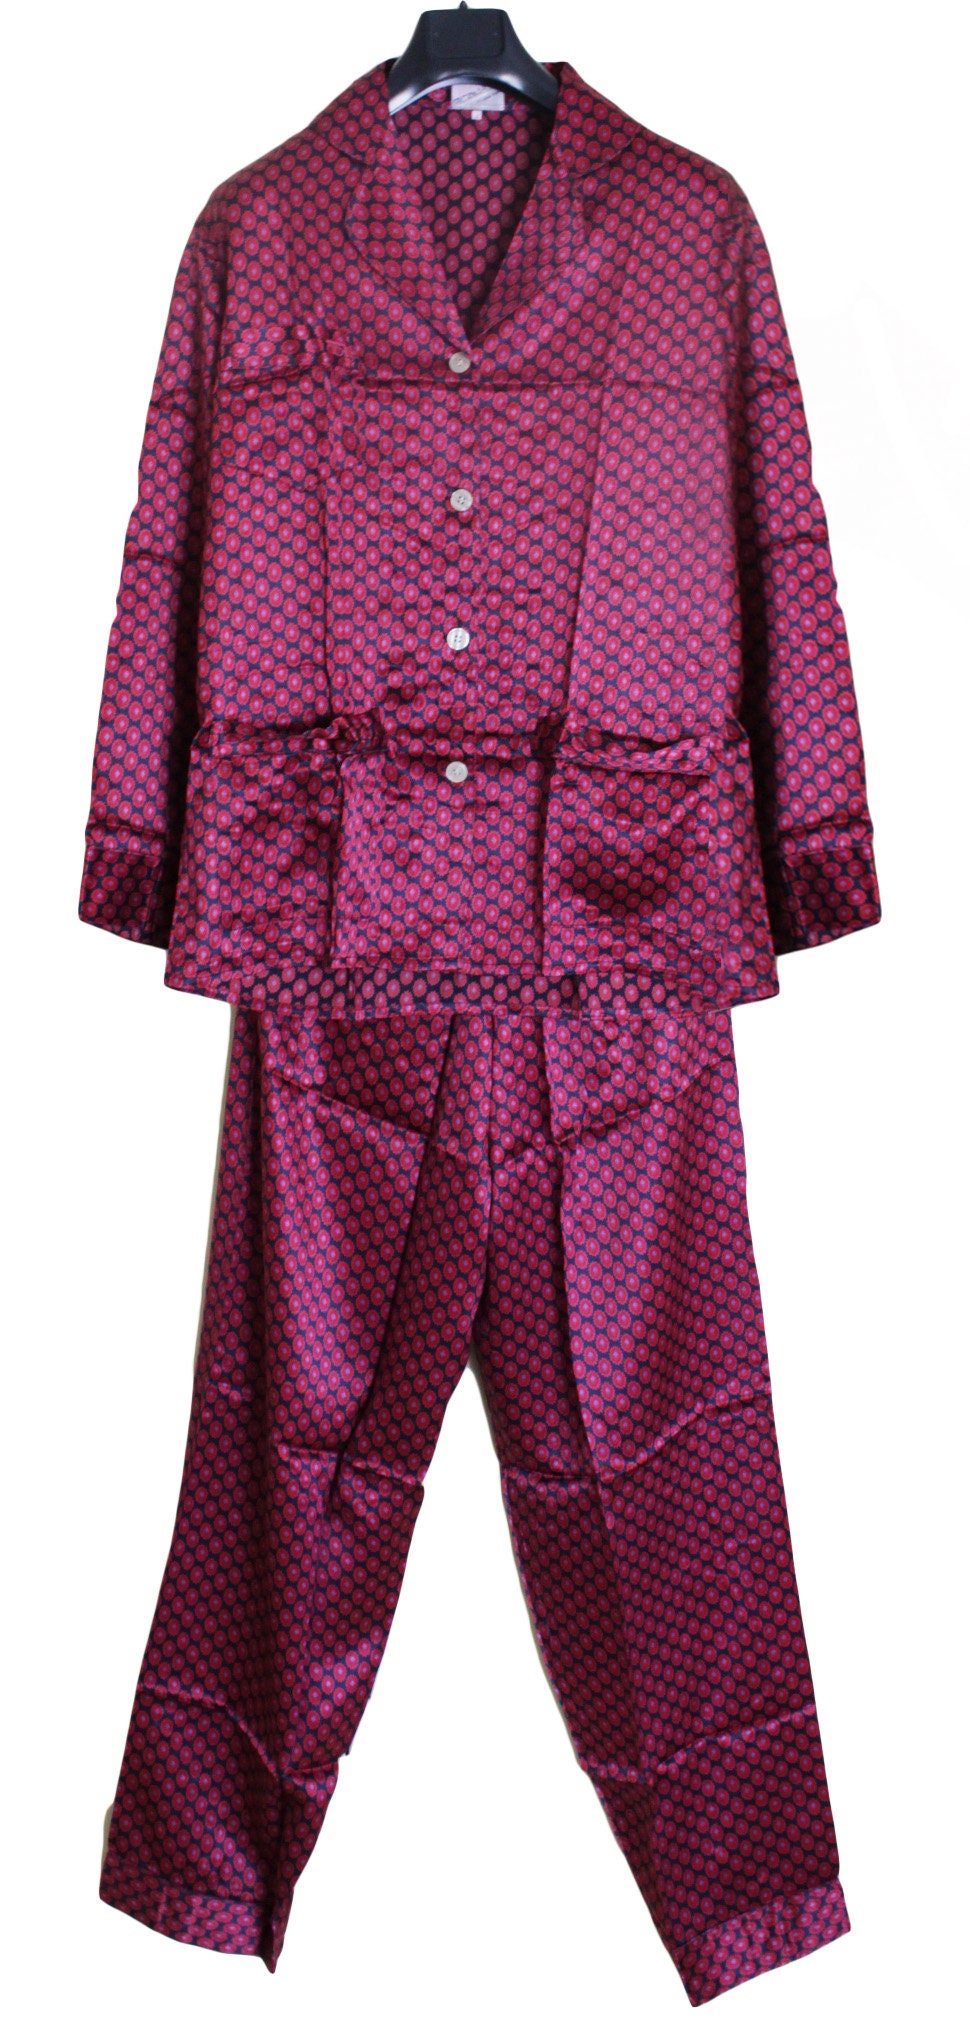 Kleding Herenkleding Pyjamas & Badjassen Jurken Heren pyjama compleet met 100% zijden Vintage stijl dressing gown 